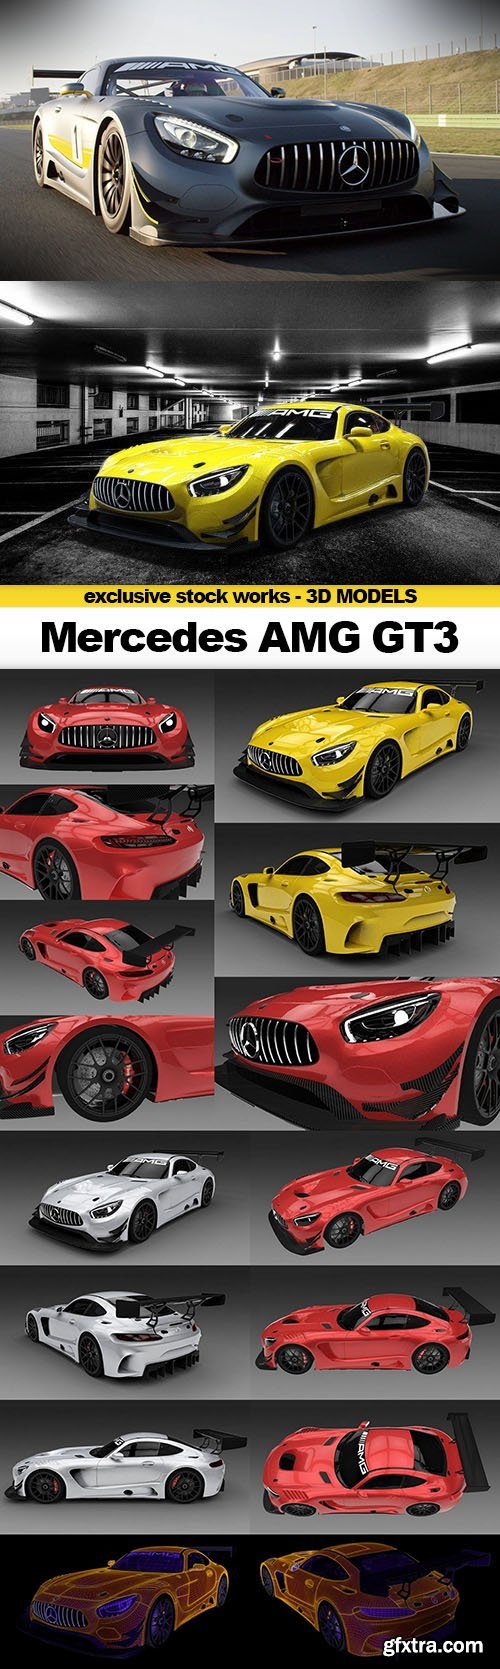 CGTrader 3D MODELS - 2016 Mercedes AMG GT3